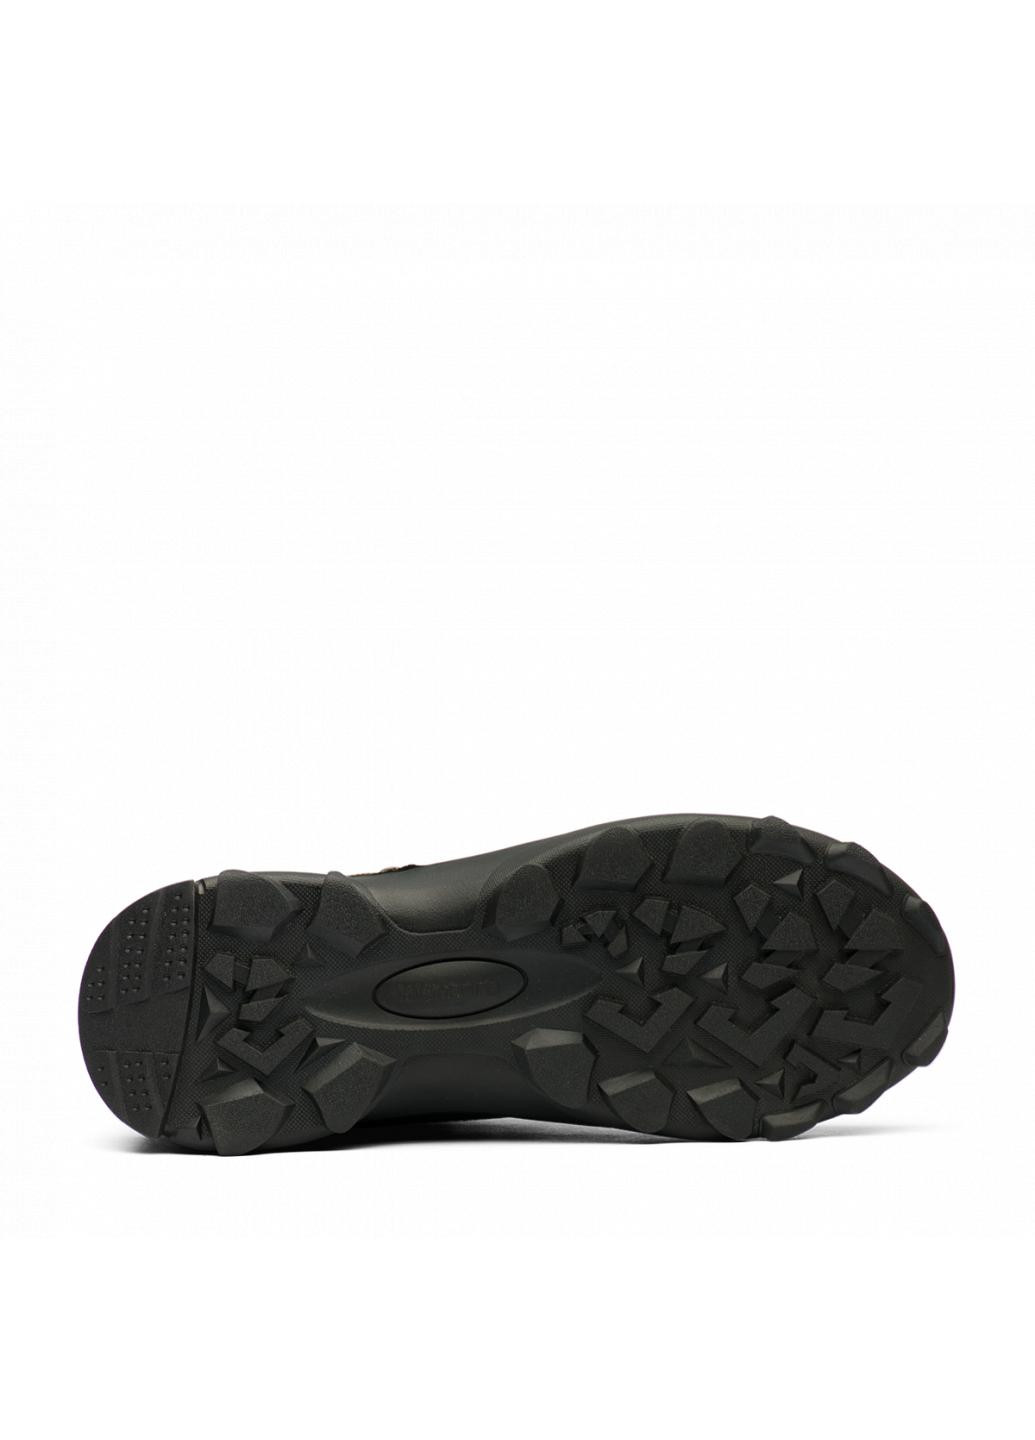 Черные зимние ботинки мужские 220579c1 Humtto